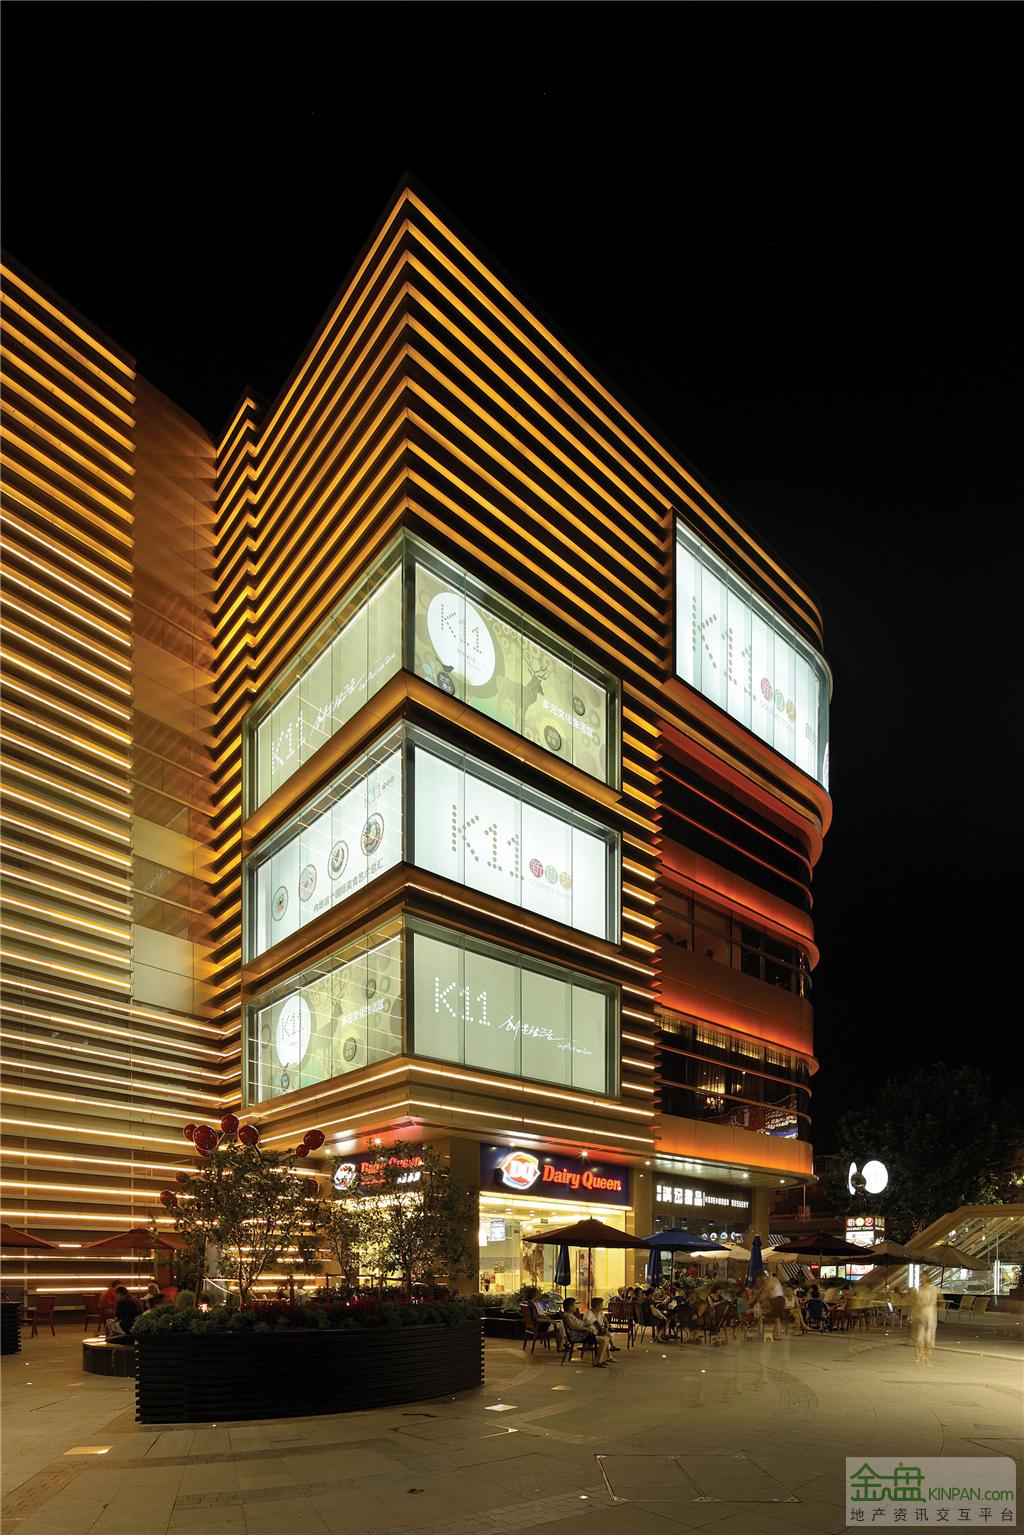 项目名称:武汉新世界k11购物中心